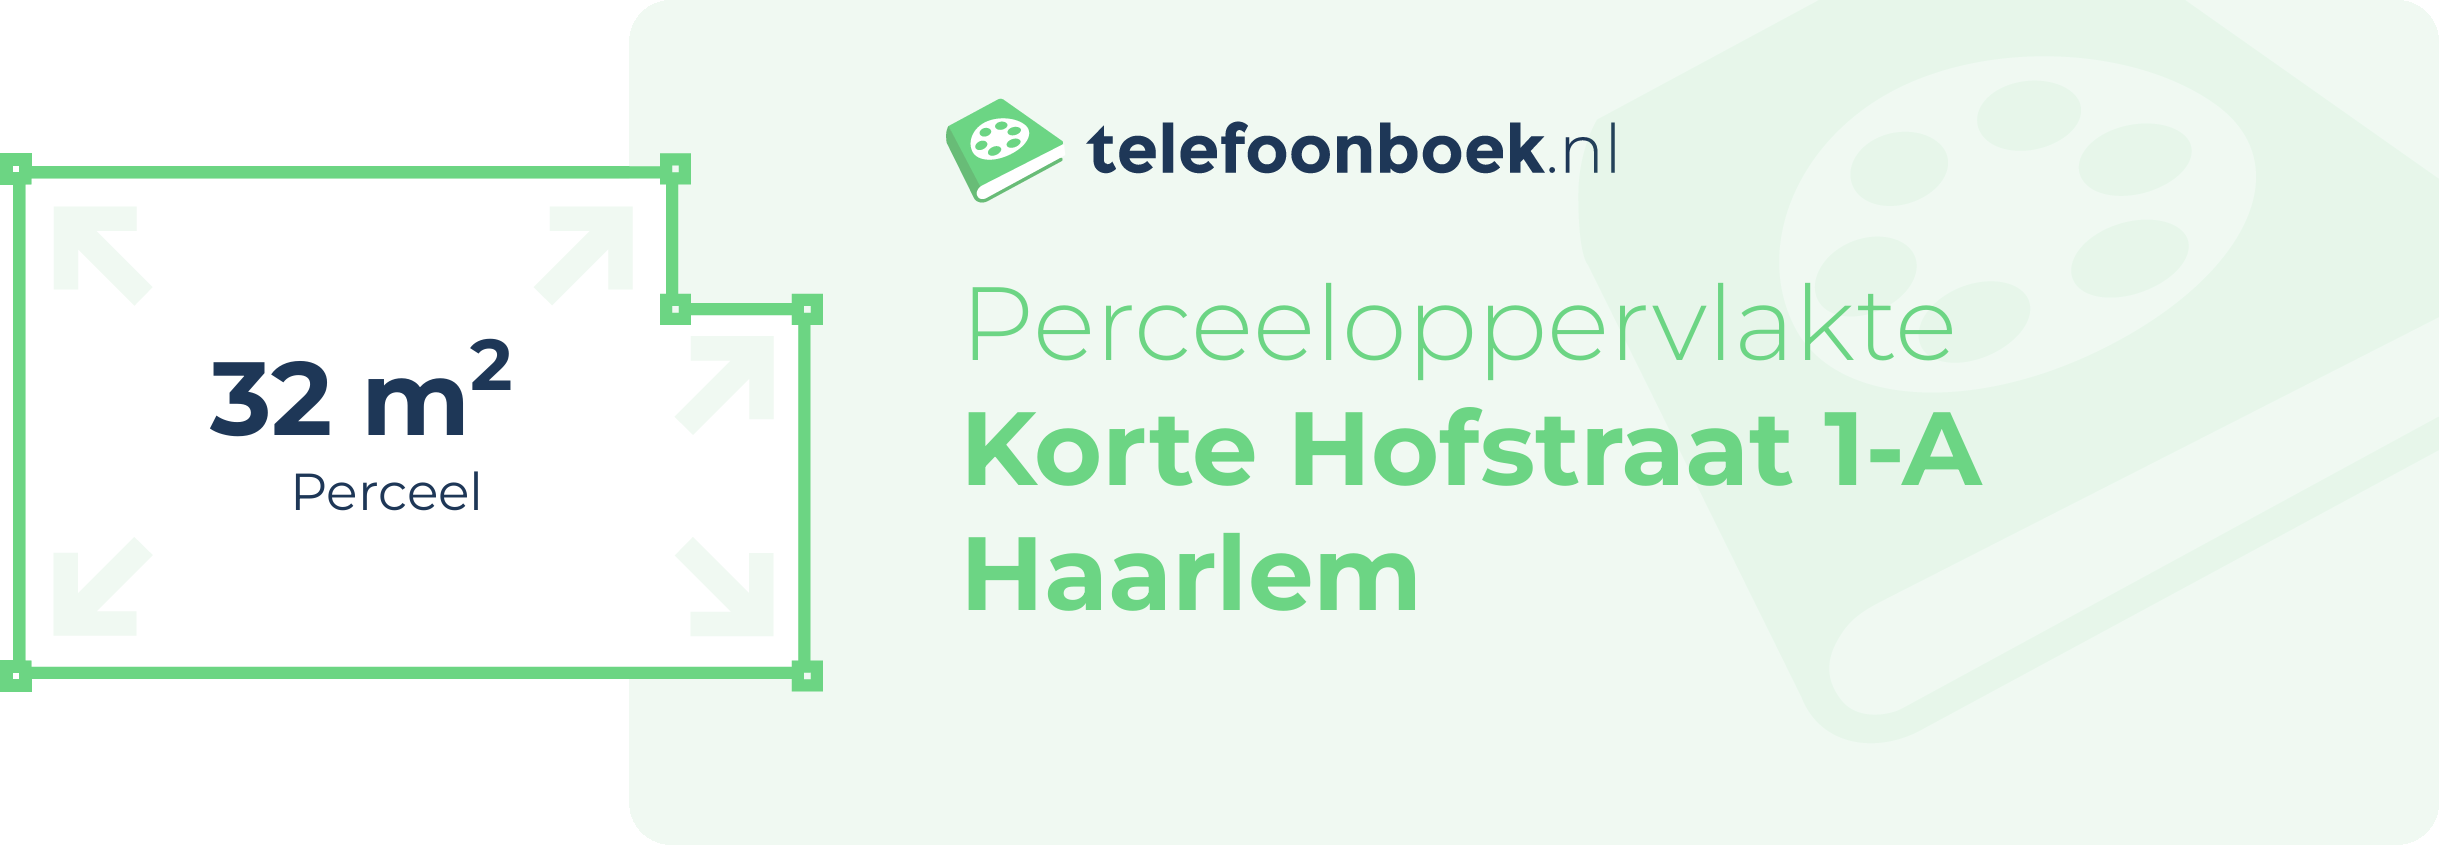 Perceeloppervlakte Korte Hofstraat 1-A Haarlem